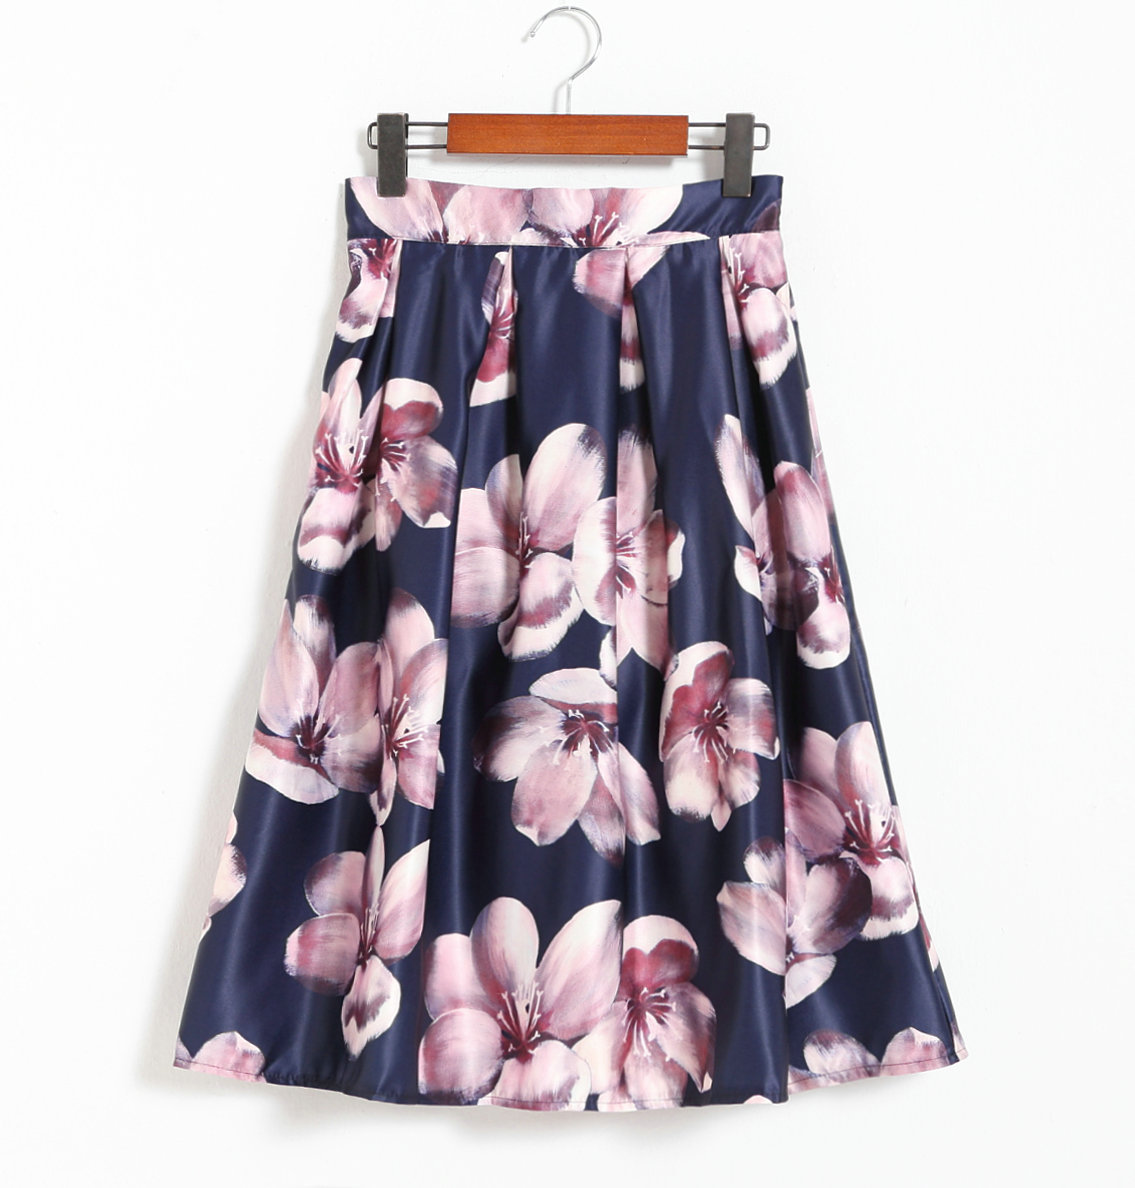 Sweet Printing Navy Blue Skirt For Women